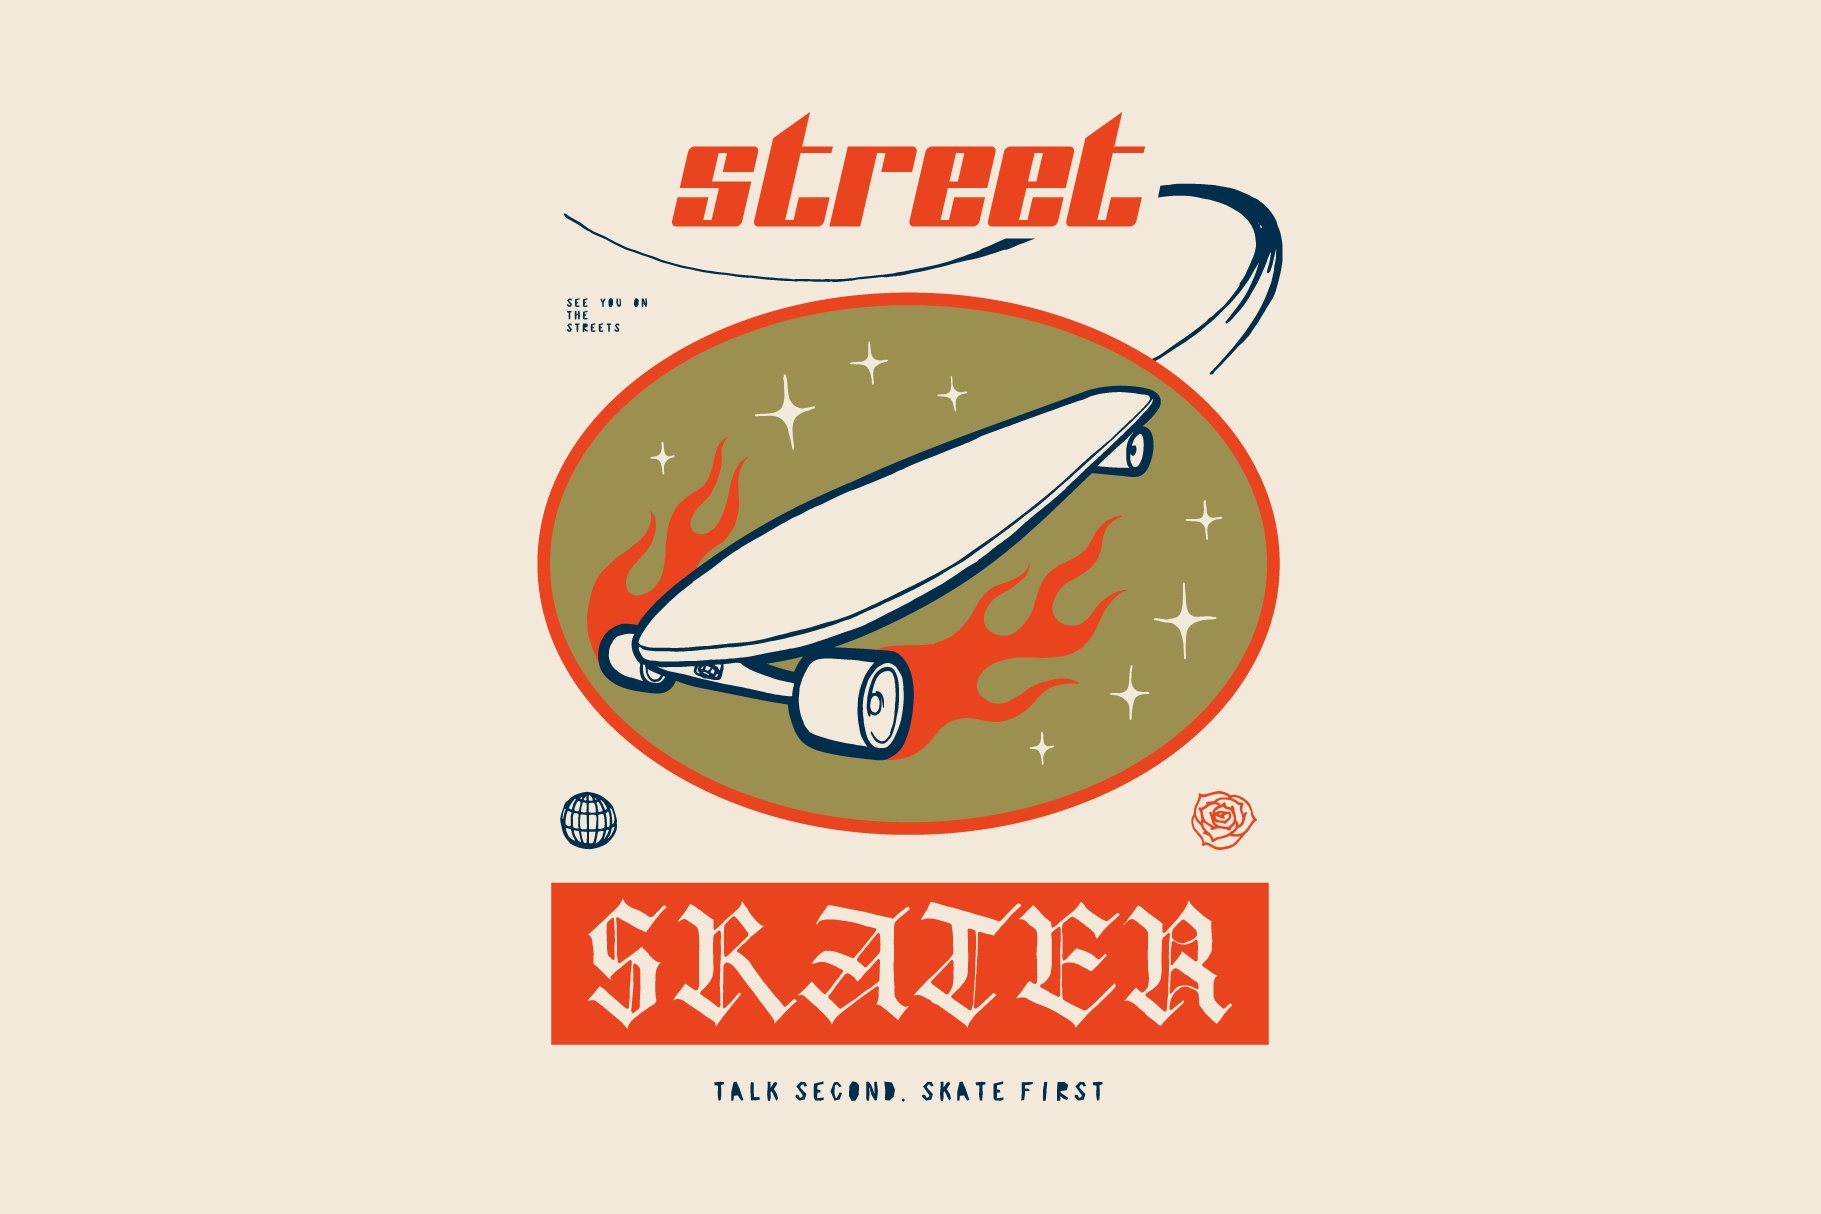 Street Skater cover image.